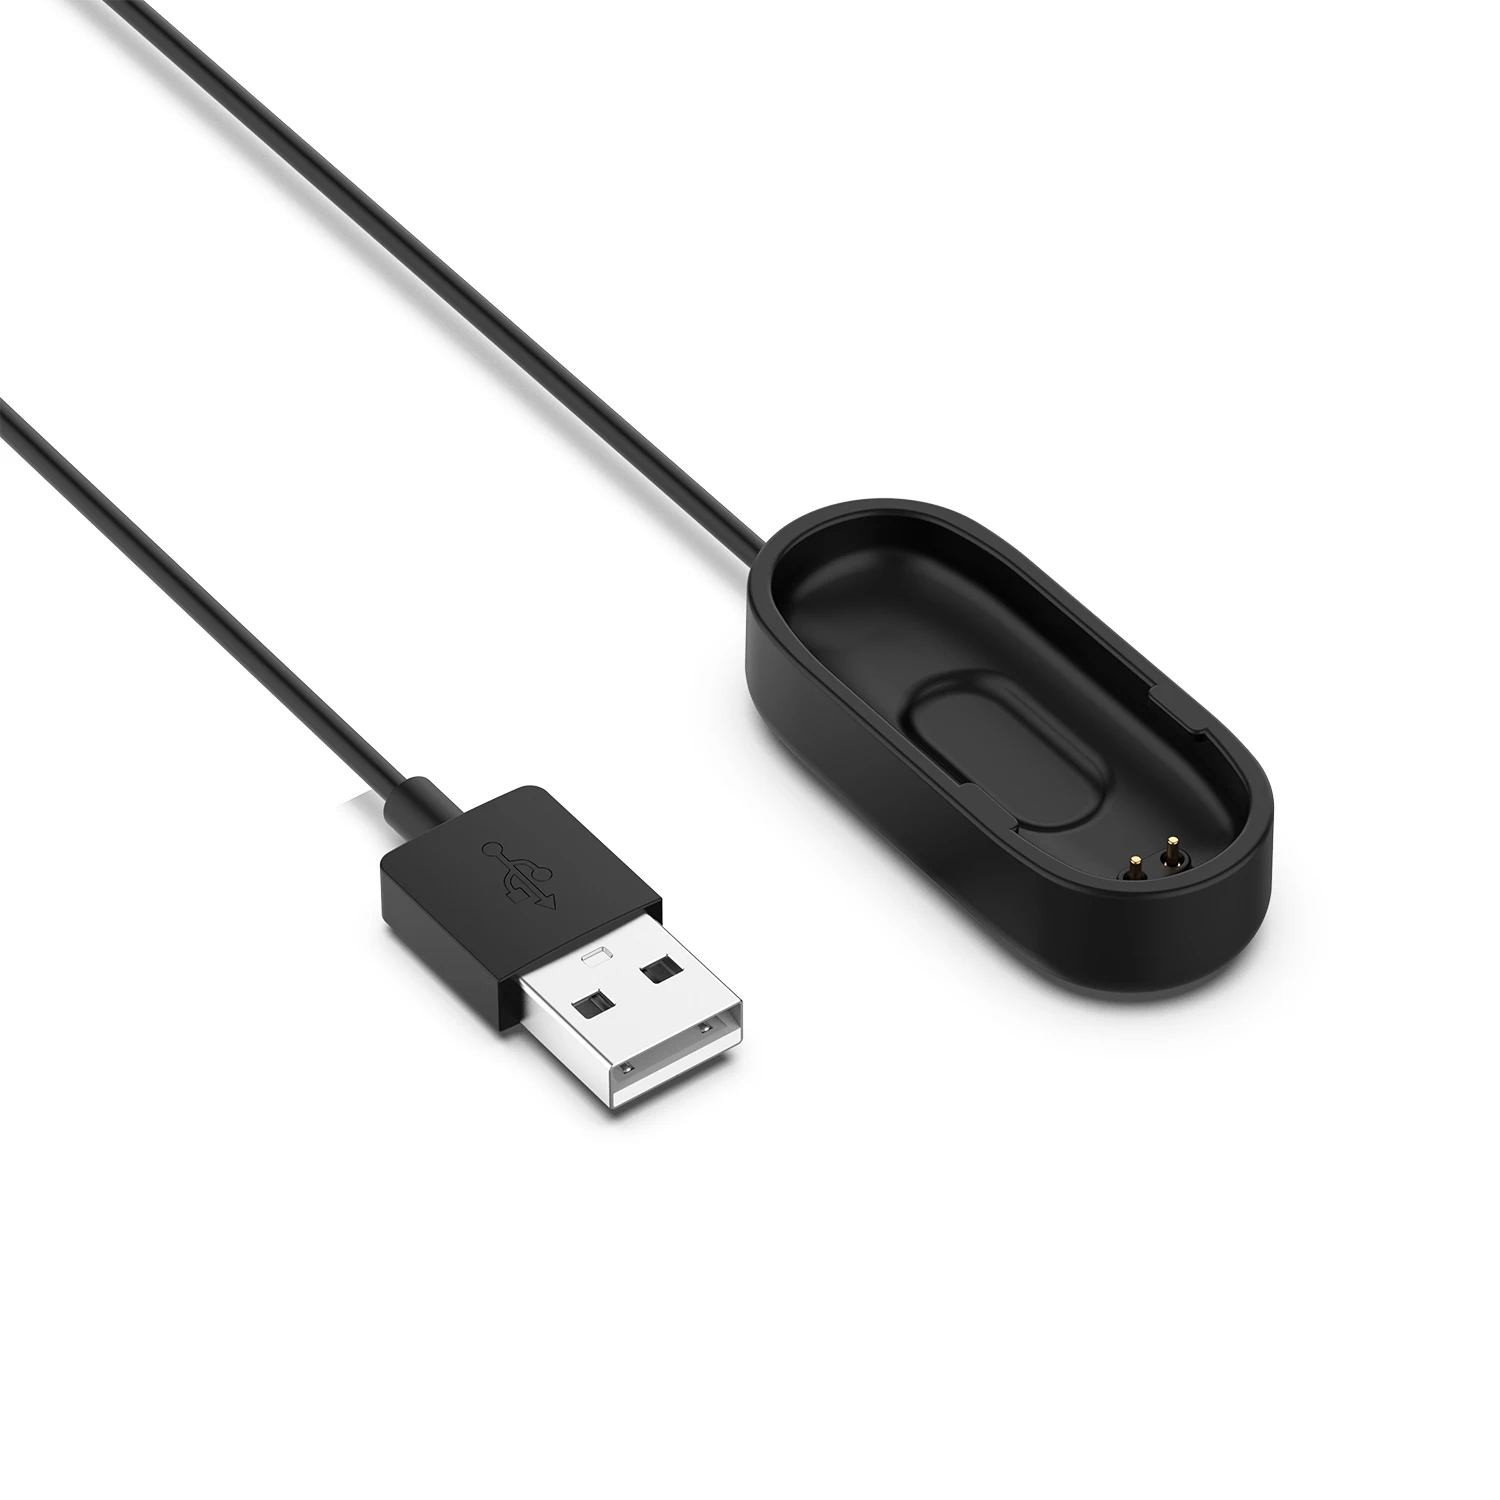 20/100 см для mi Группа 4 USB Зарядное устройство зарядки подставка с зарядным устройством для замены Шнур адаптер для Xiaomi mi группа 4 смарт-браслеты